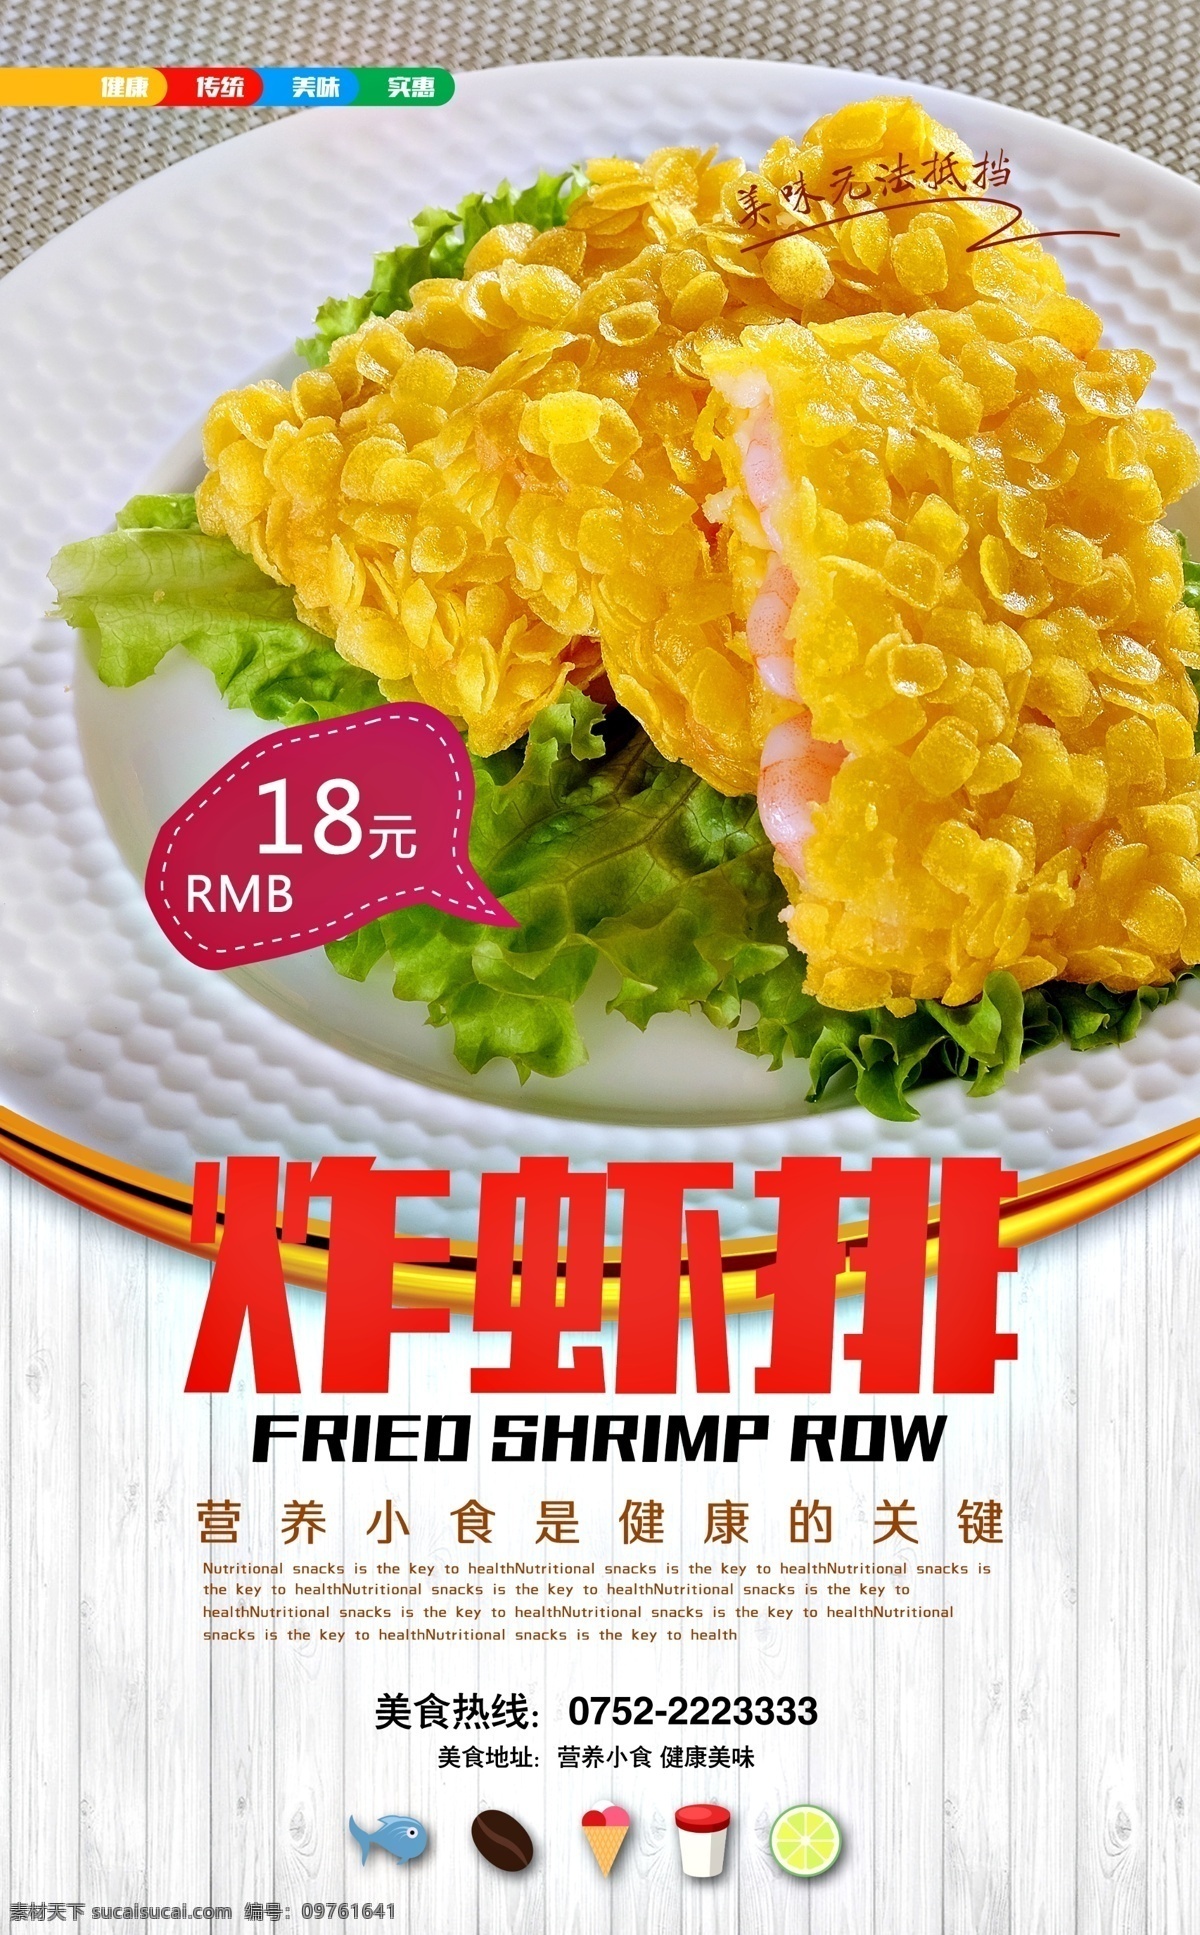 餐厅海报 便利 质量 服务 新鲜 便宜 水果 肉类 服务员 时尚 高档 海报 炸虾排 白色